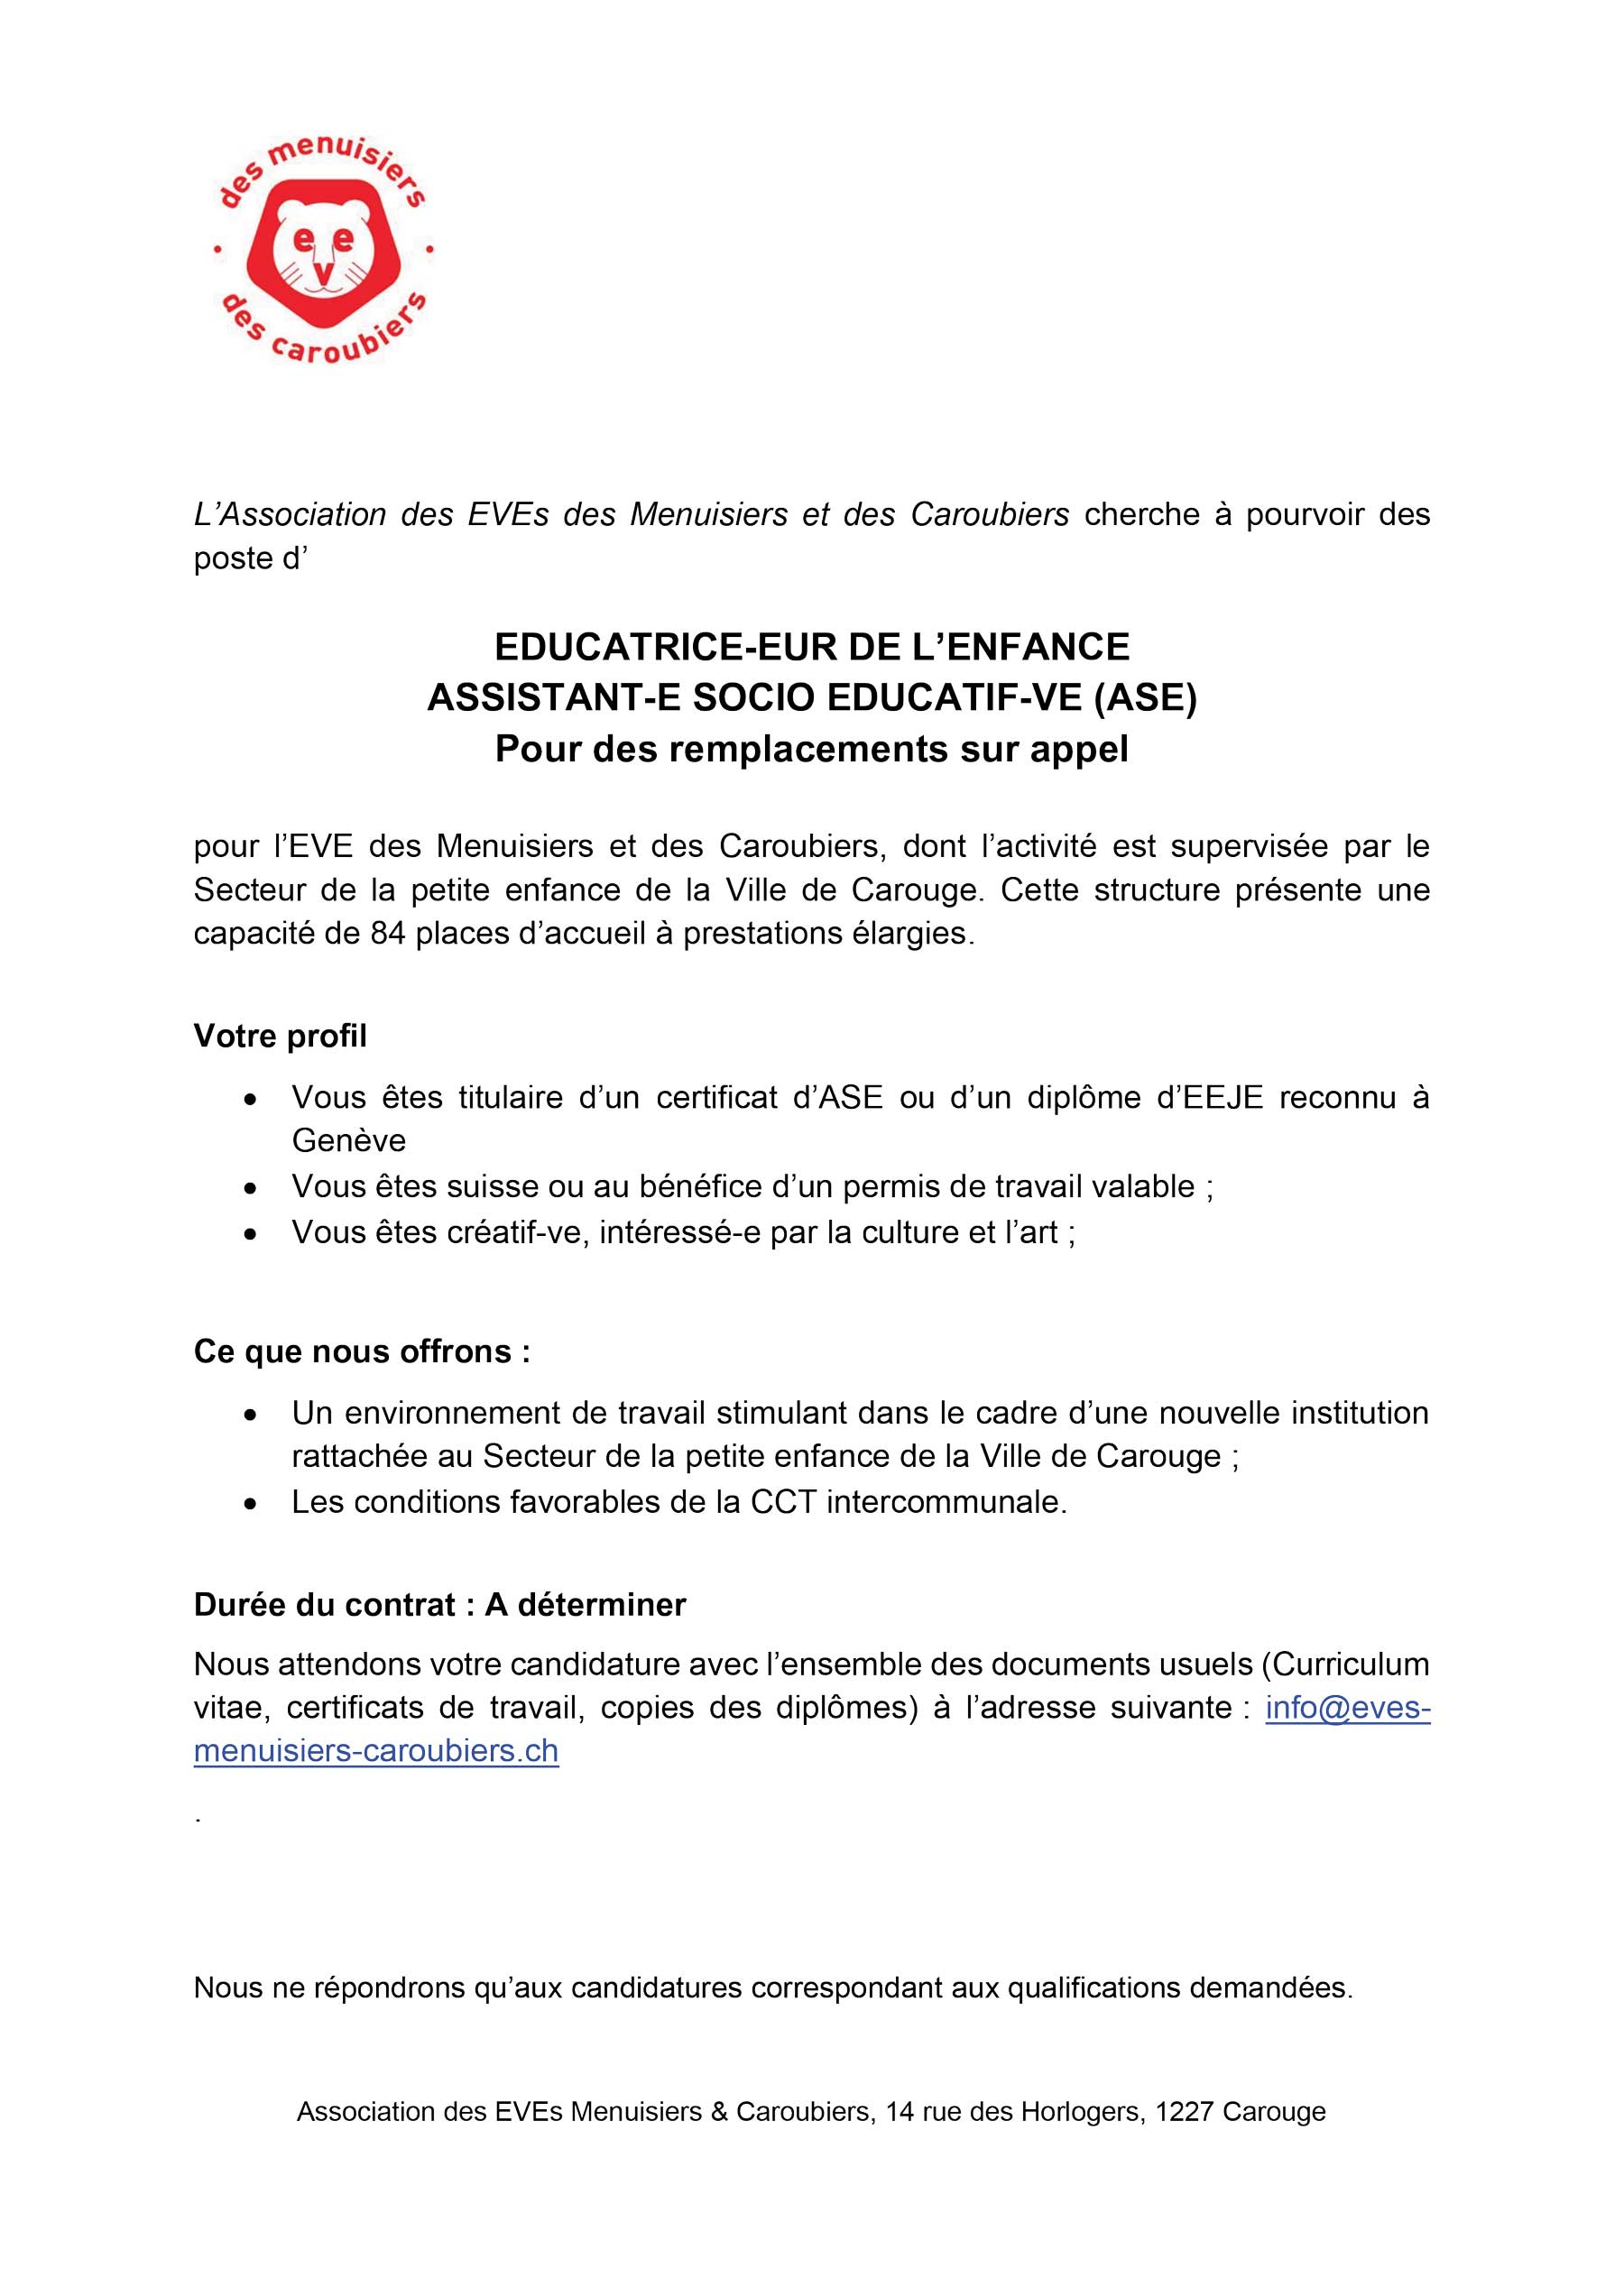 EDUCATRICE-EUR DE L’ENFANCE ASSISTANT-E SOCIO EDUCATIF-VE (ASE) Pour des remplacements sur appel